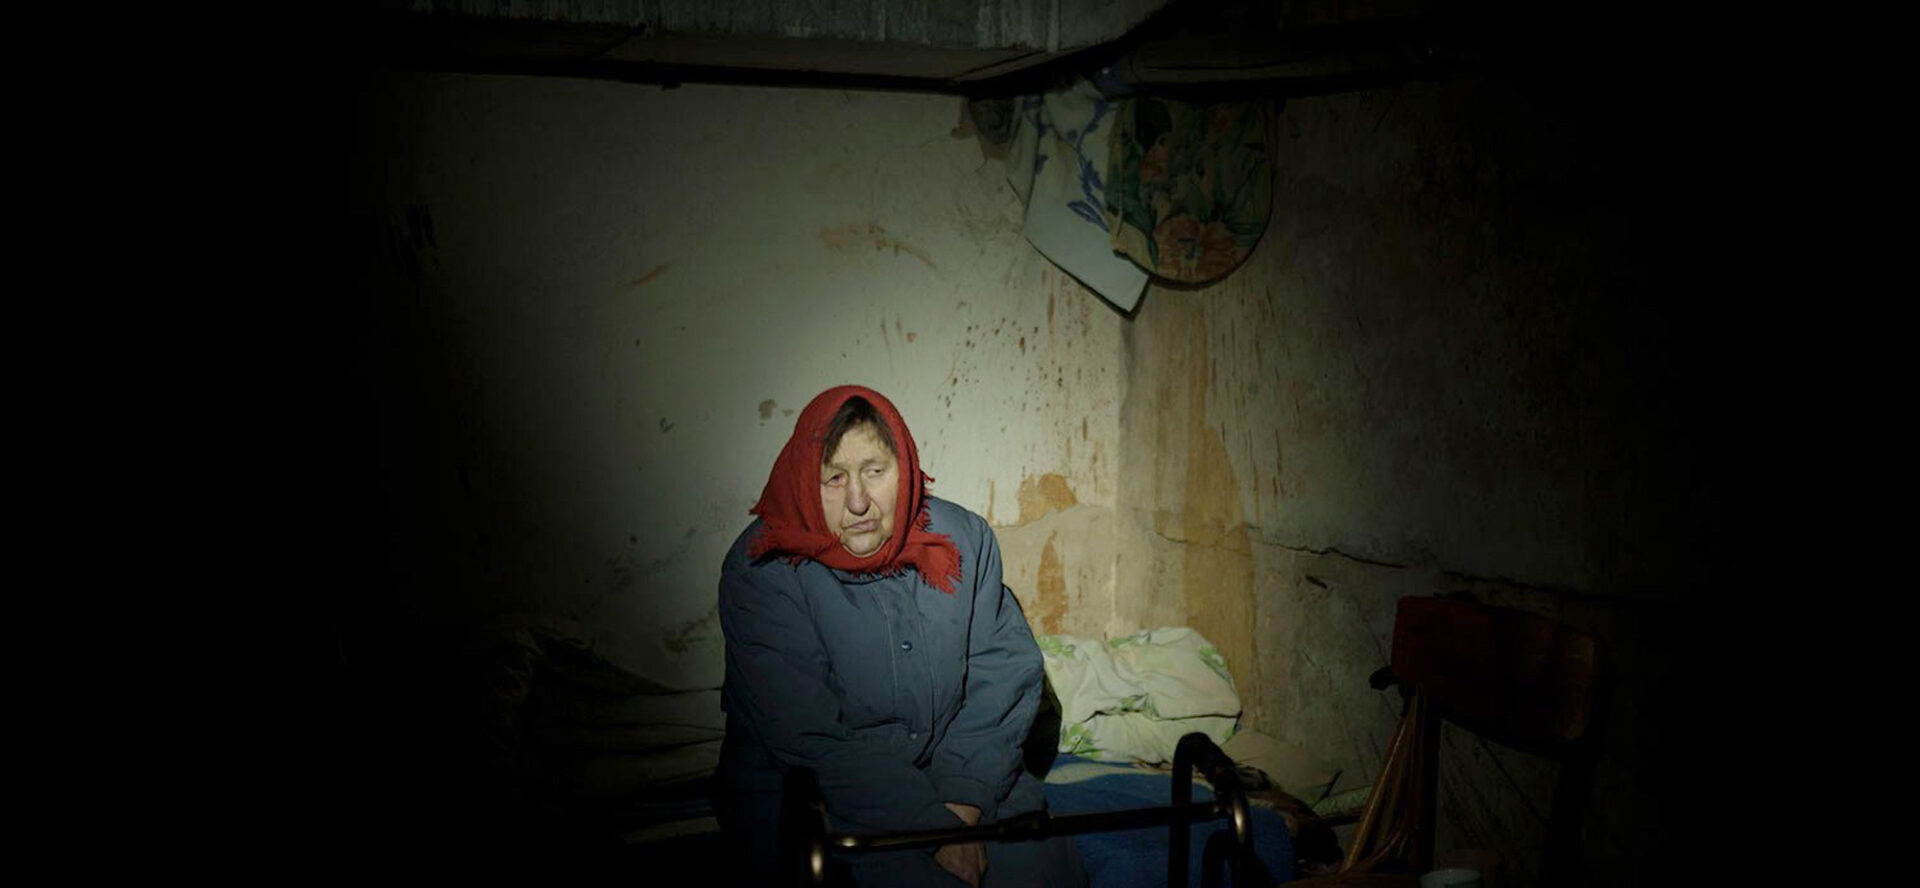 Les Eglises suisses appellent à ne pas oublier les victimes de la guerre en Ukraine | photo: une habitante de la ville ukrainienne d'Irpin dans son appartement dévasté, en mars 2022 © manhhai/Flickr/CC BY 2.0